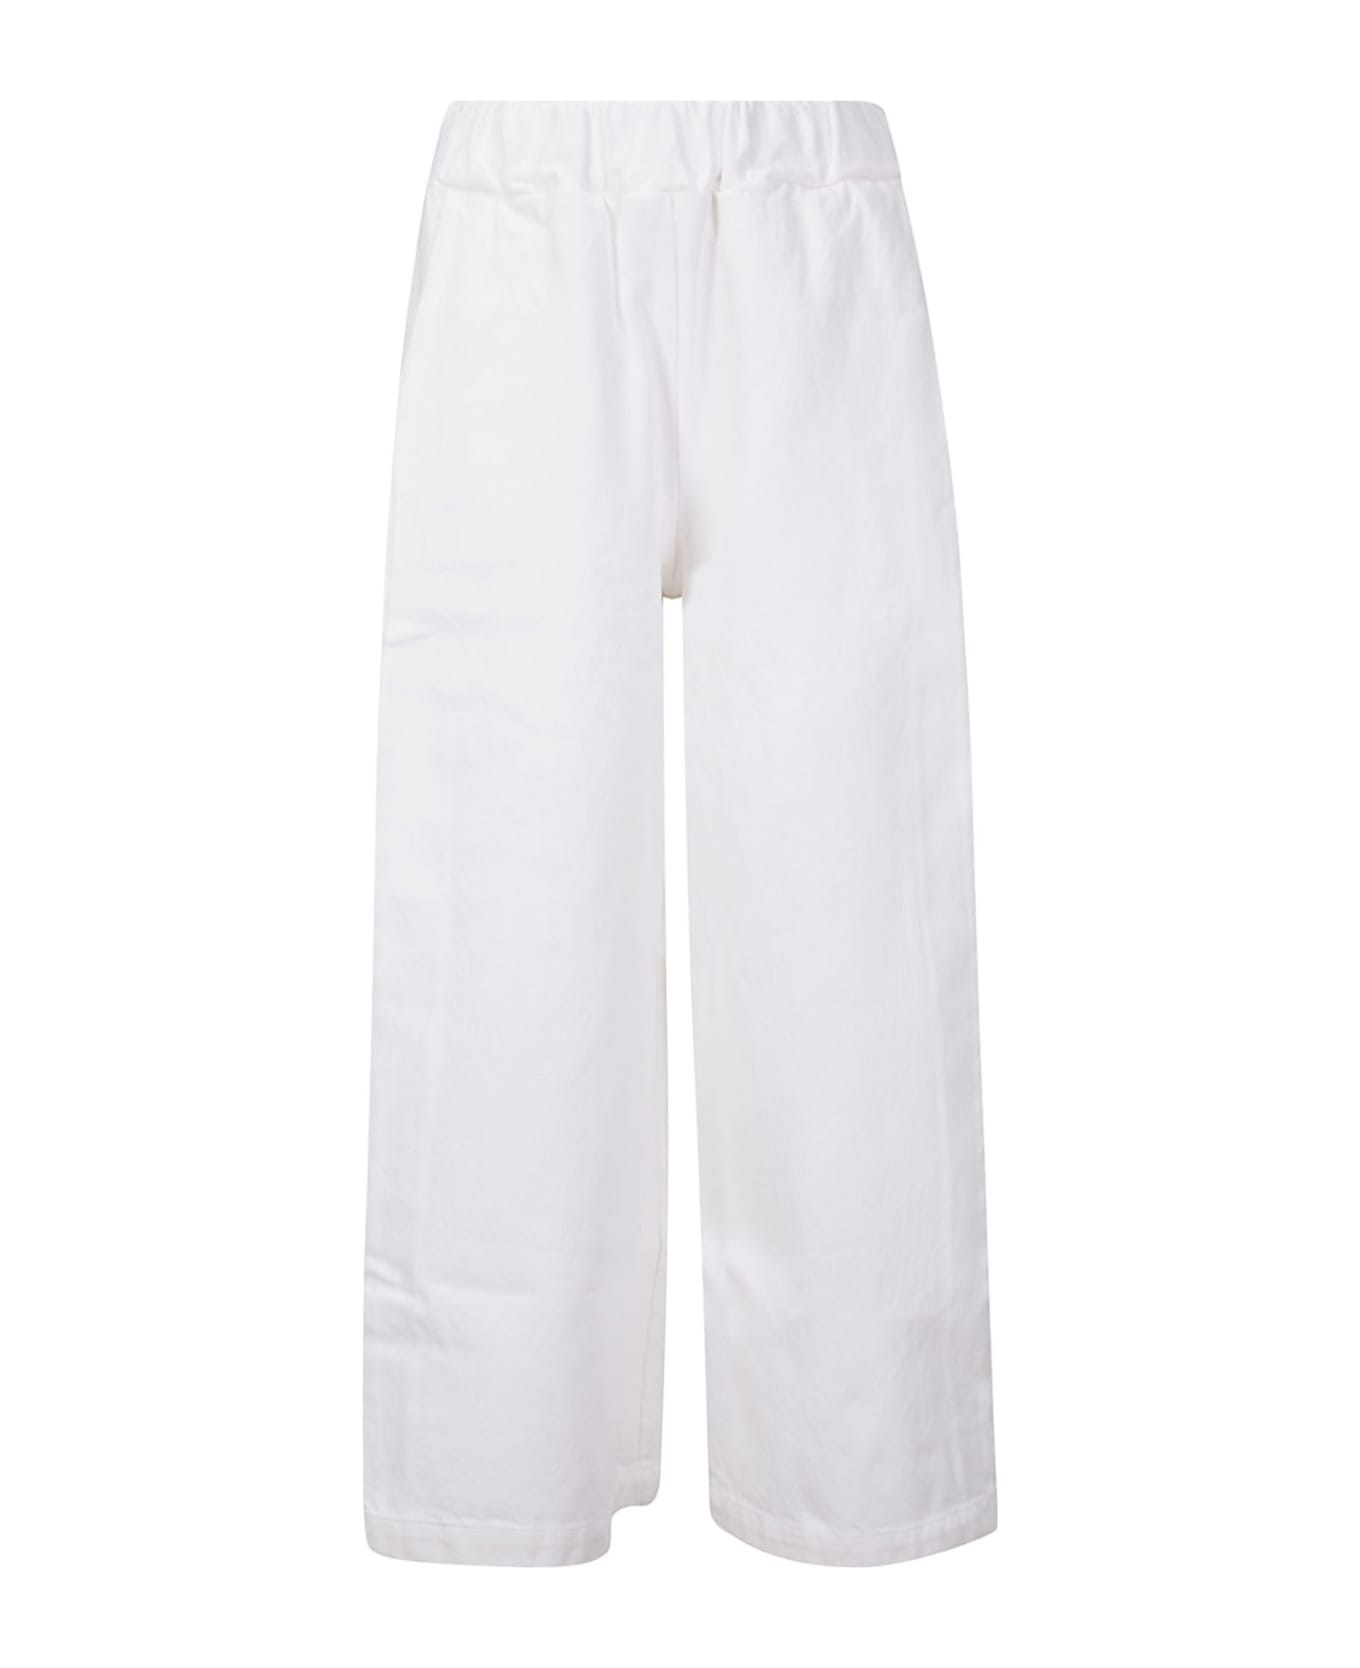 Labo.Art Storto Malindi Trousers - WHITE